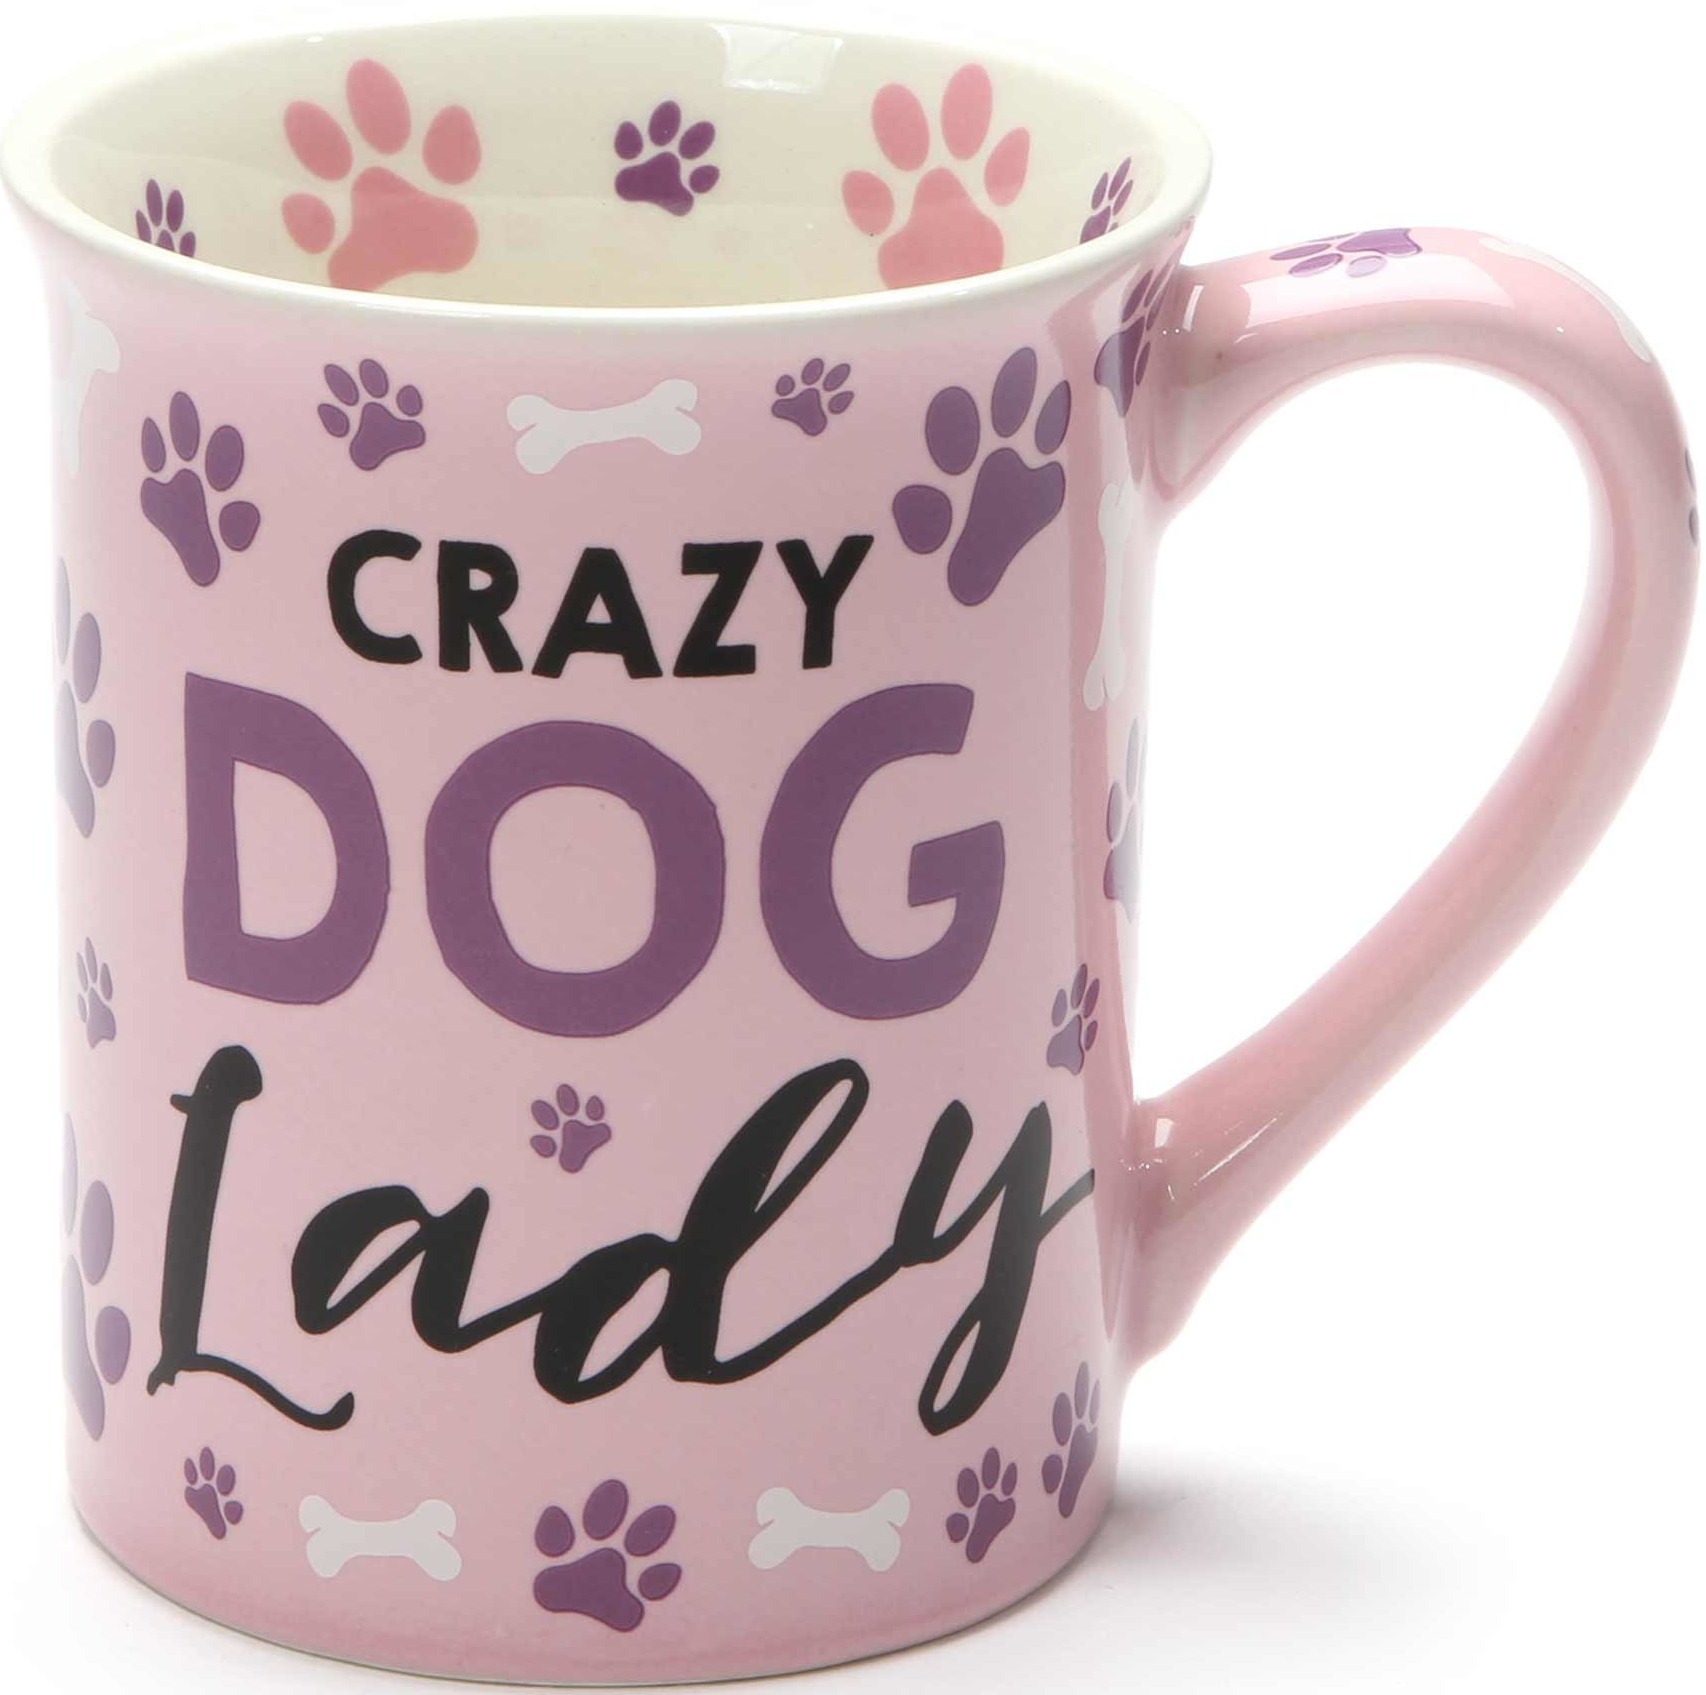 Our Name Is Mud 6001227i Crazy Dog Lady Mug